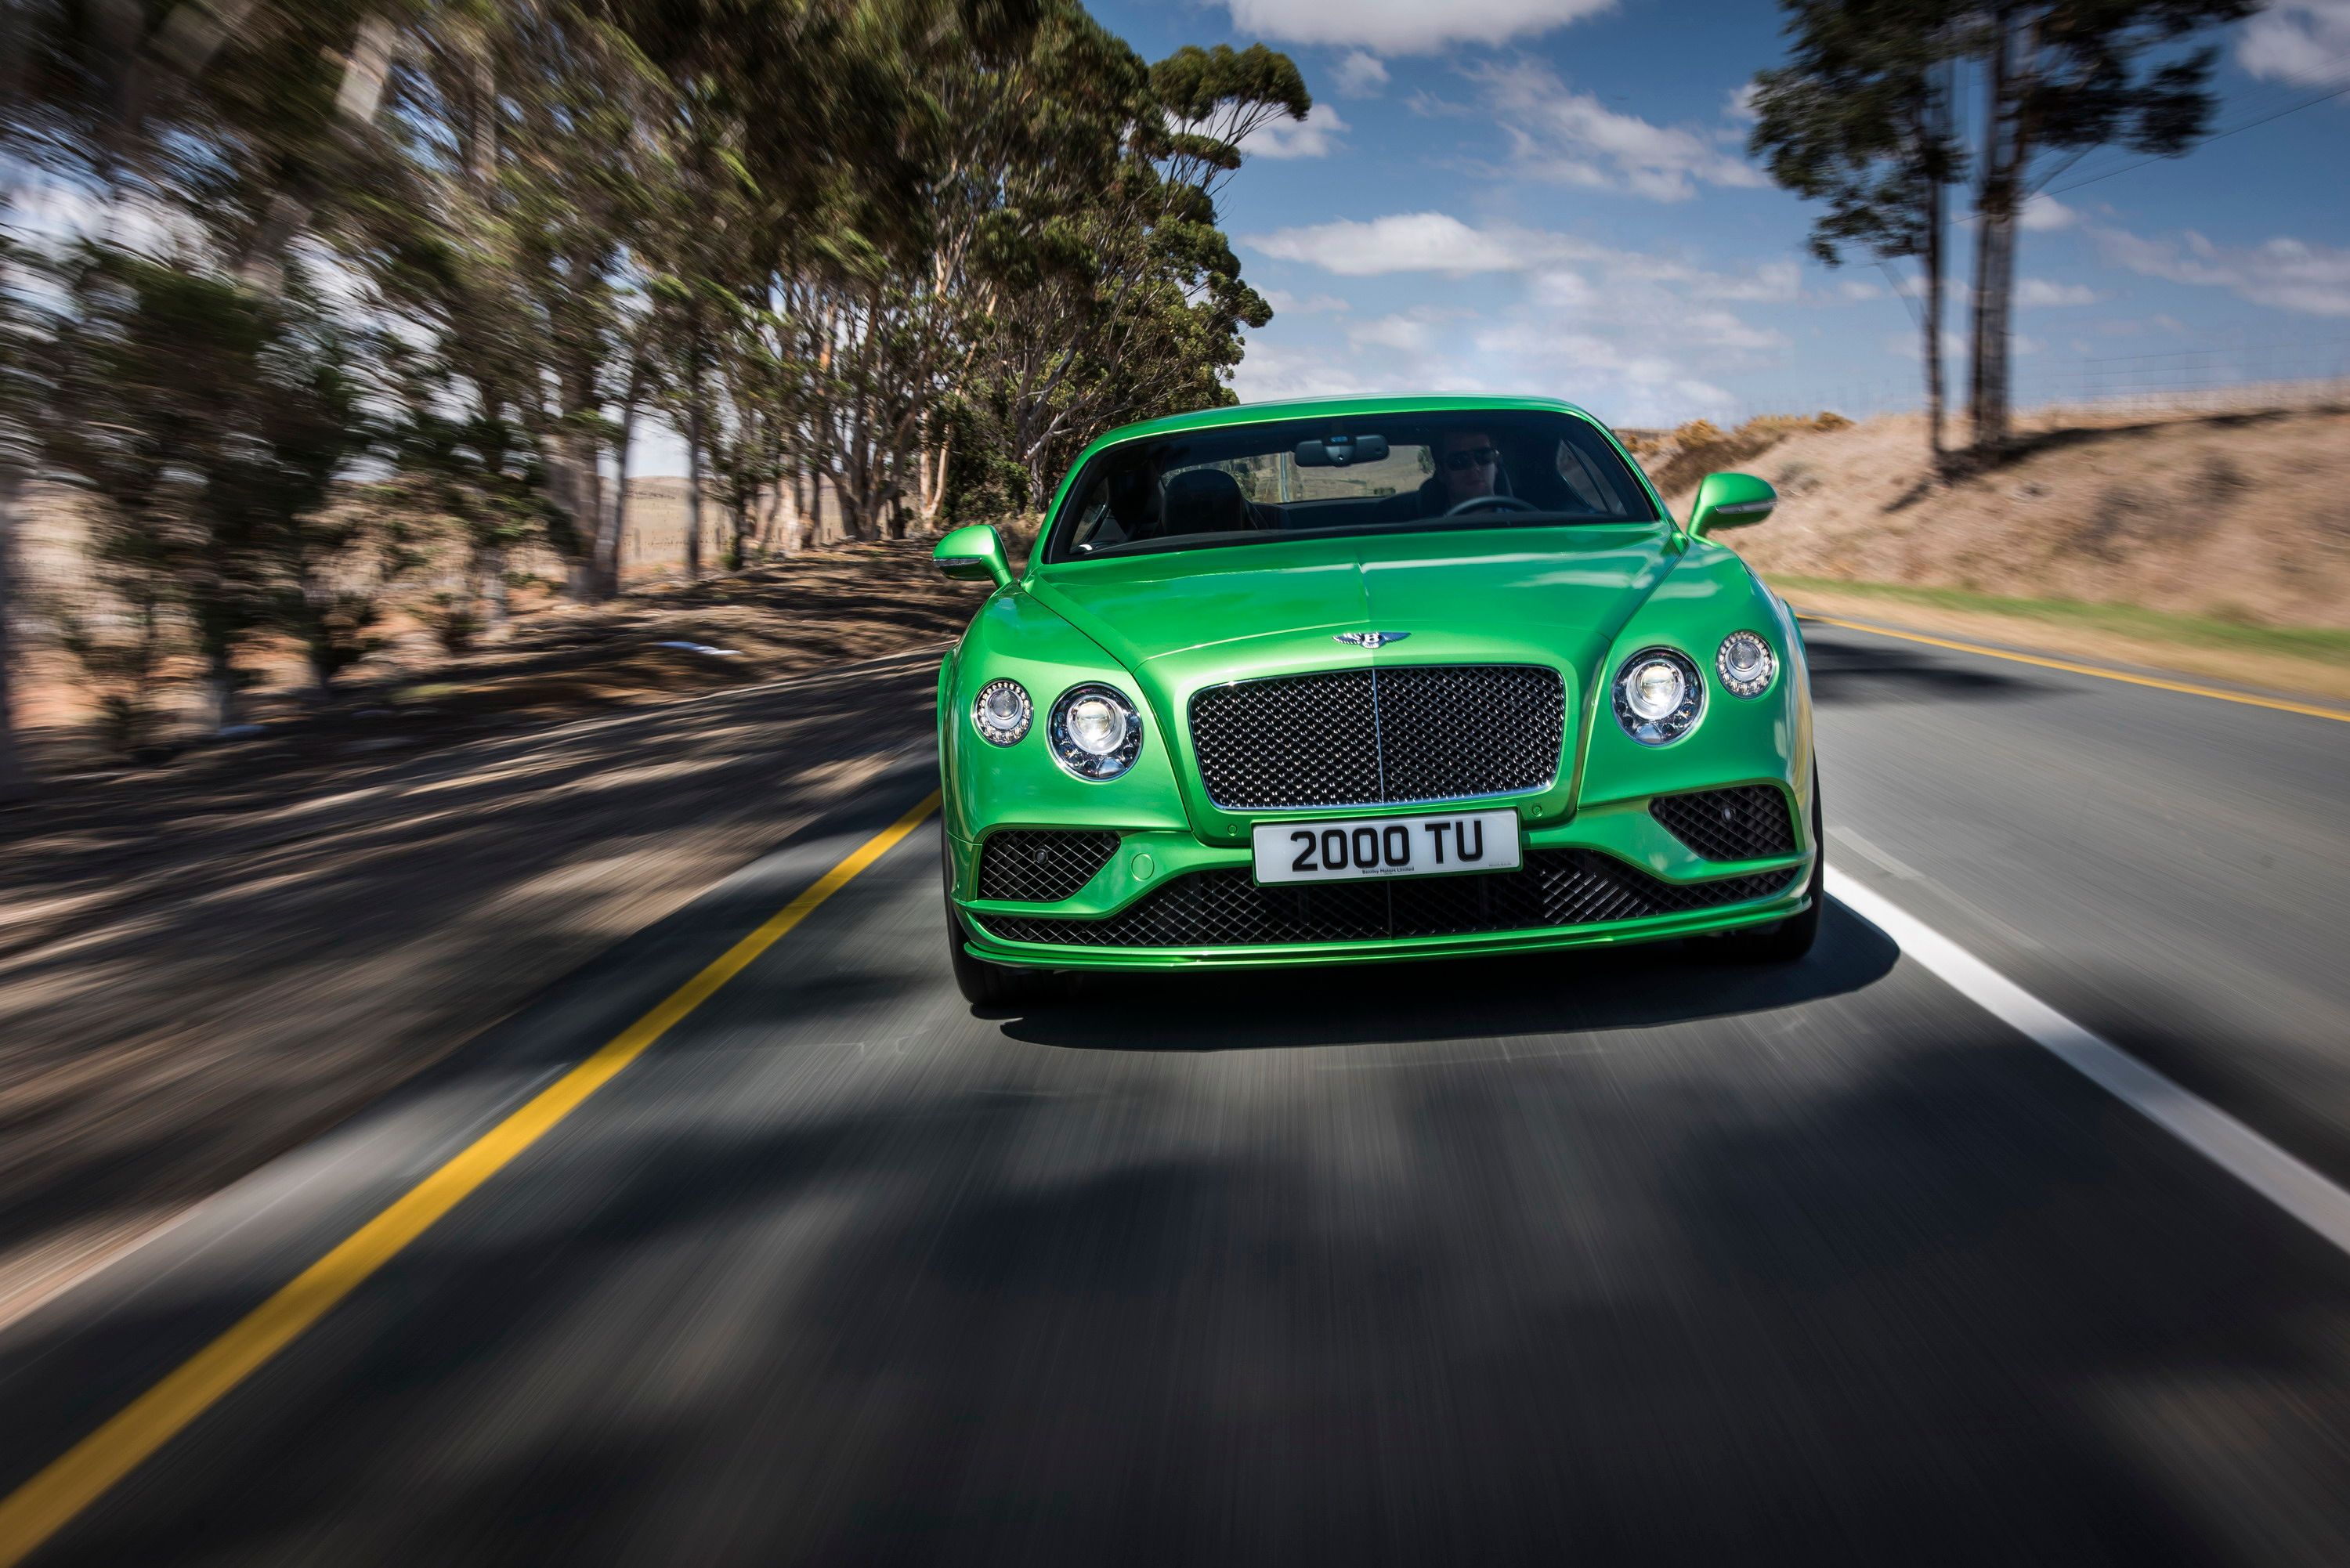 2016 - 2017 Bentley Continental GT Speed